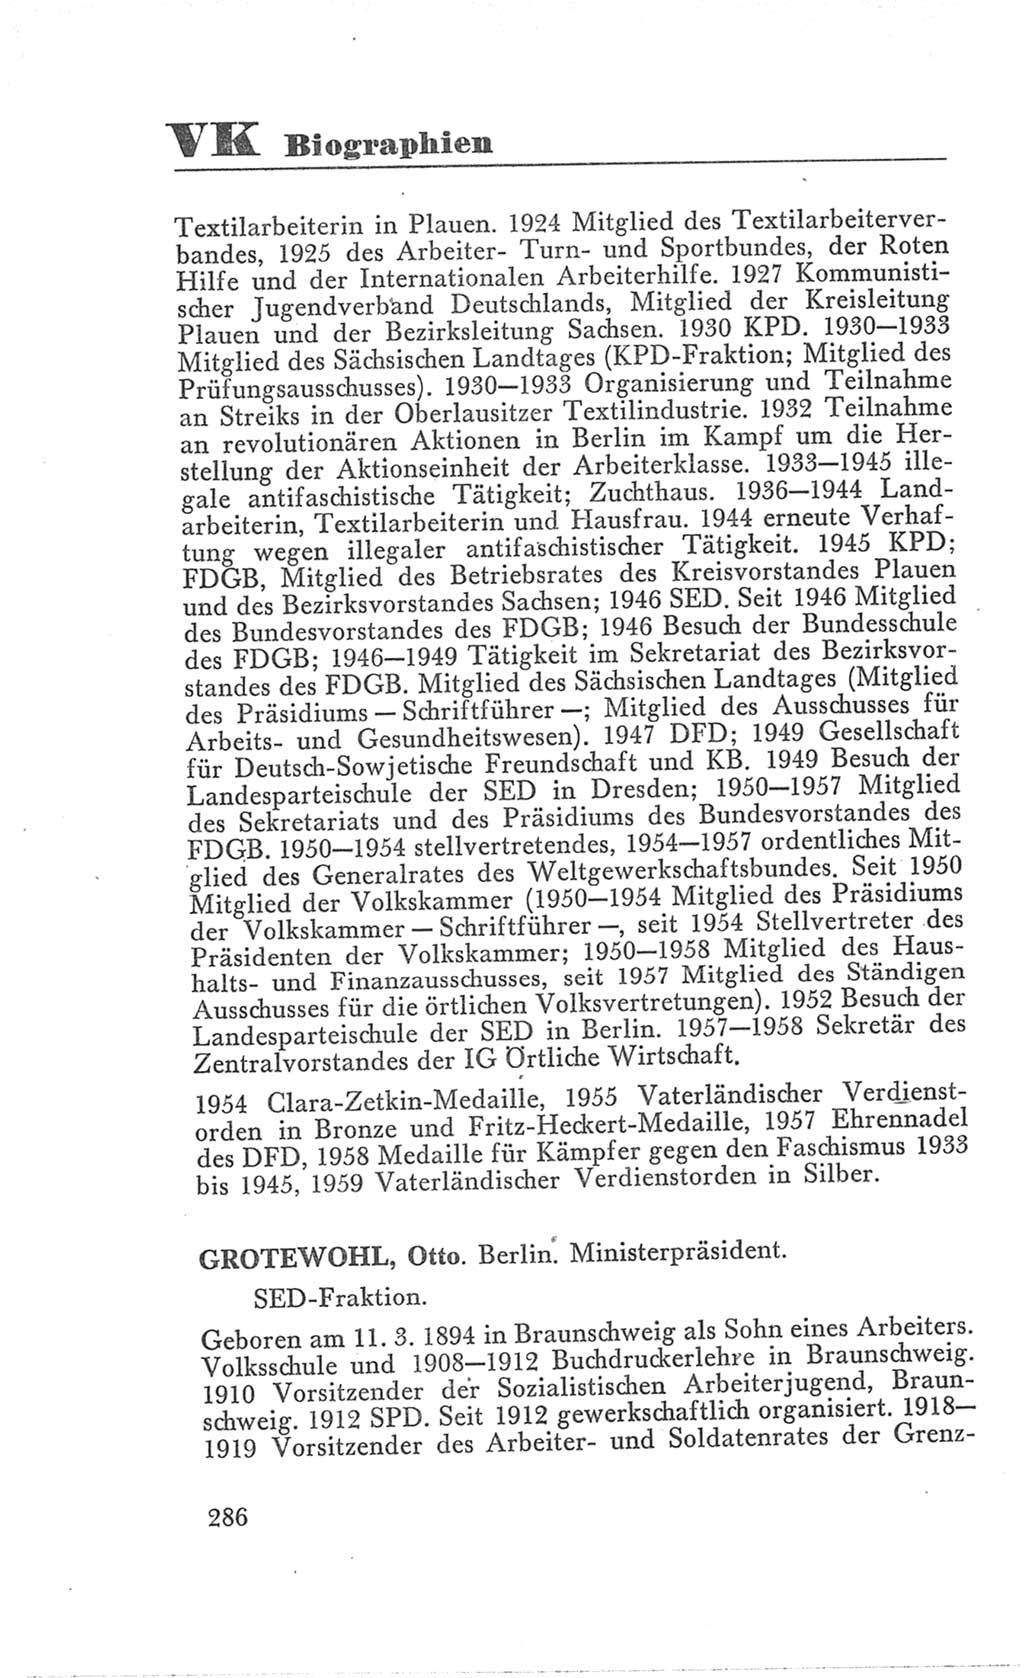 Handbuch der Volkskammer (VK) der Deutschen Demokratischen Republik (DDR), 3. Wahlperiode 1958-1963, Seite 286 (Hdb. VK. DDR 3. WP. 1958-1963, S. 286)